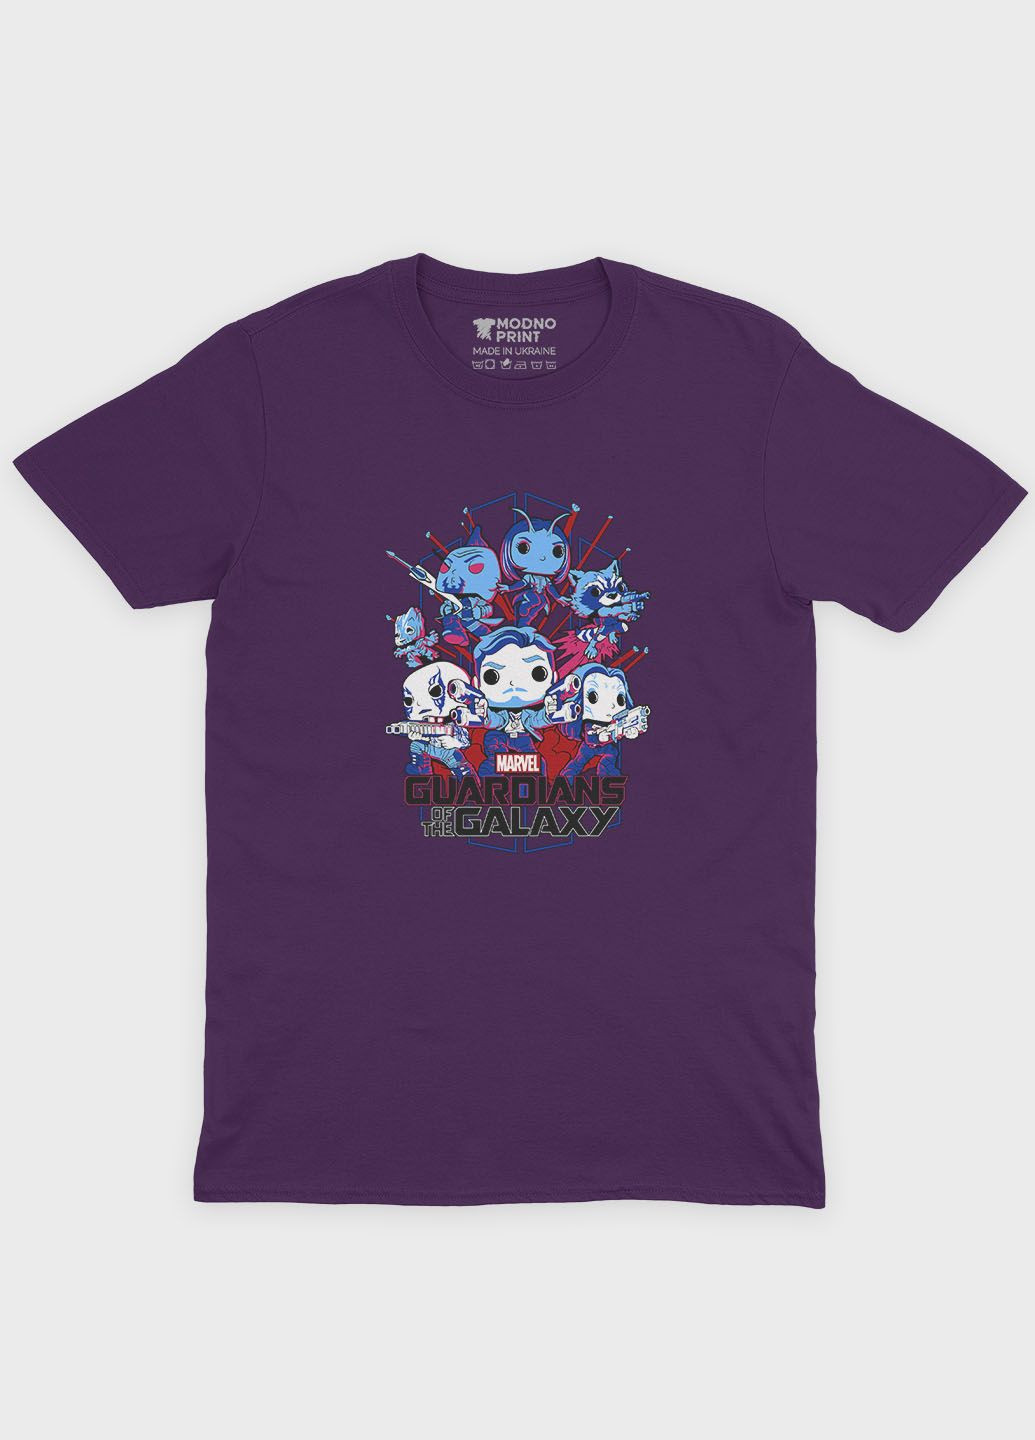 Фіолетова демісезонна футболка для дівчинки з принтом супергероїв - вартові галактики (ts001-1-dby-006-017-002-g) Modno